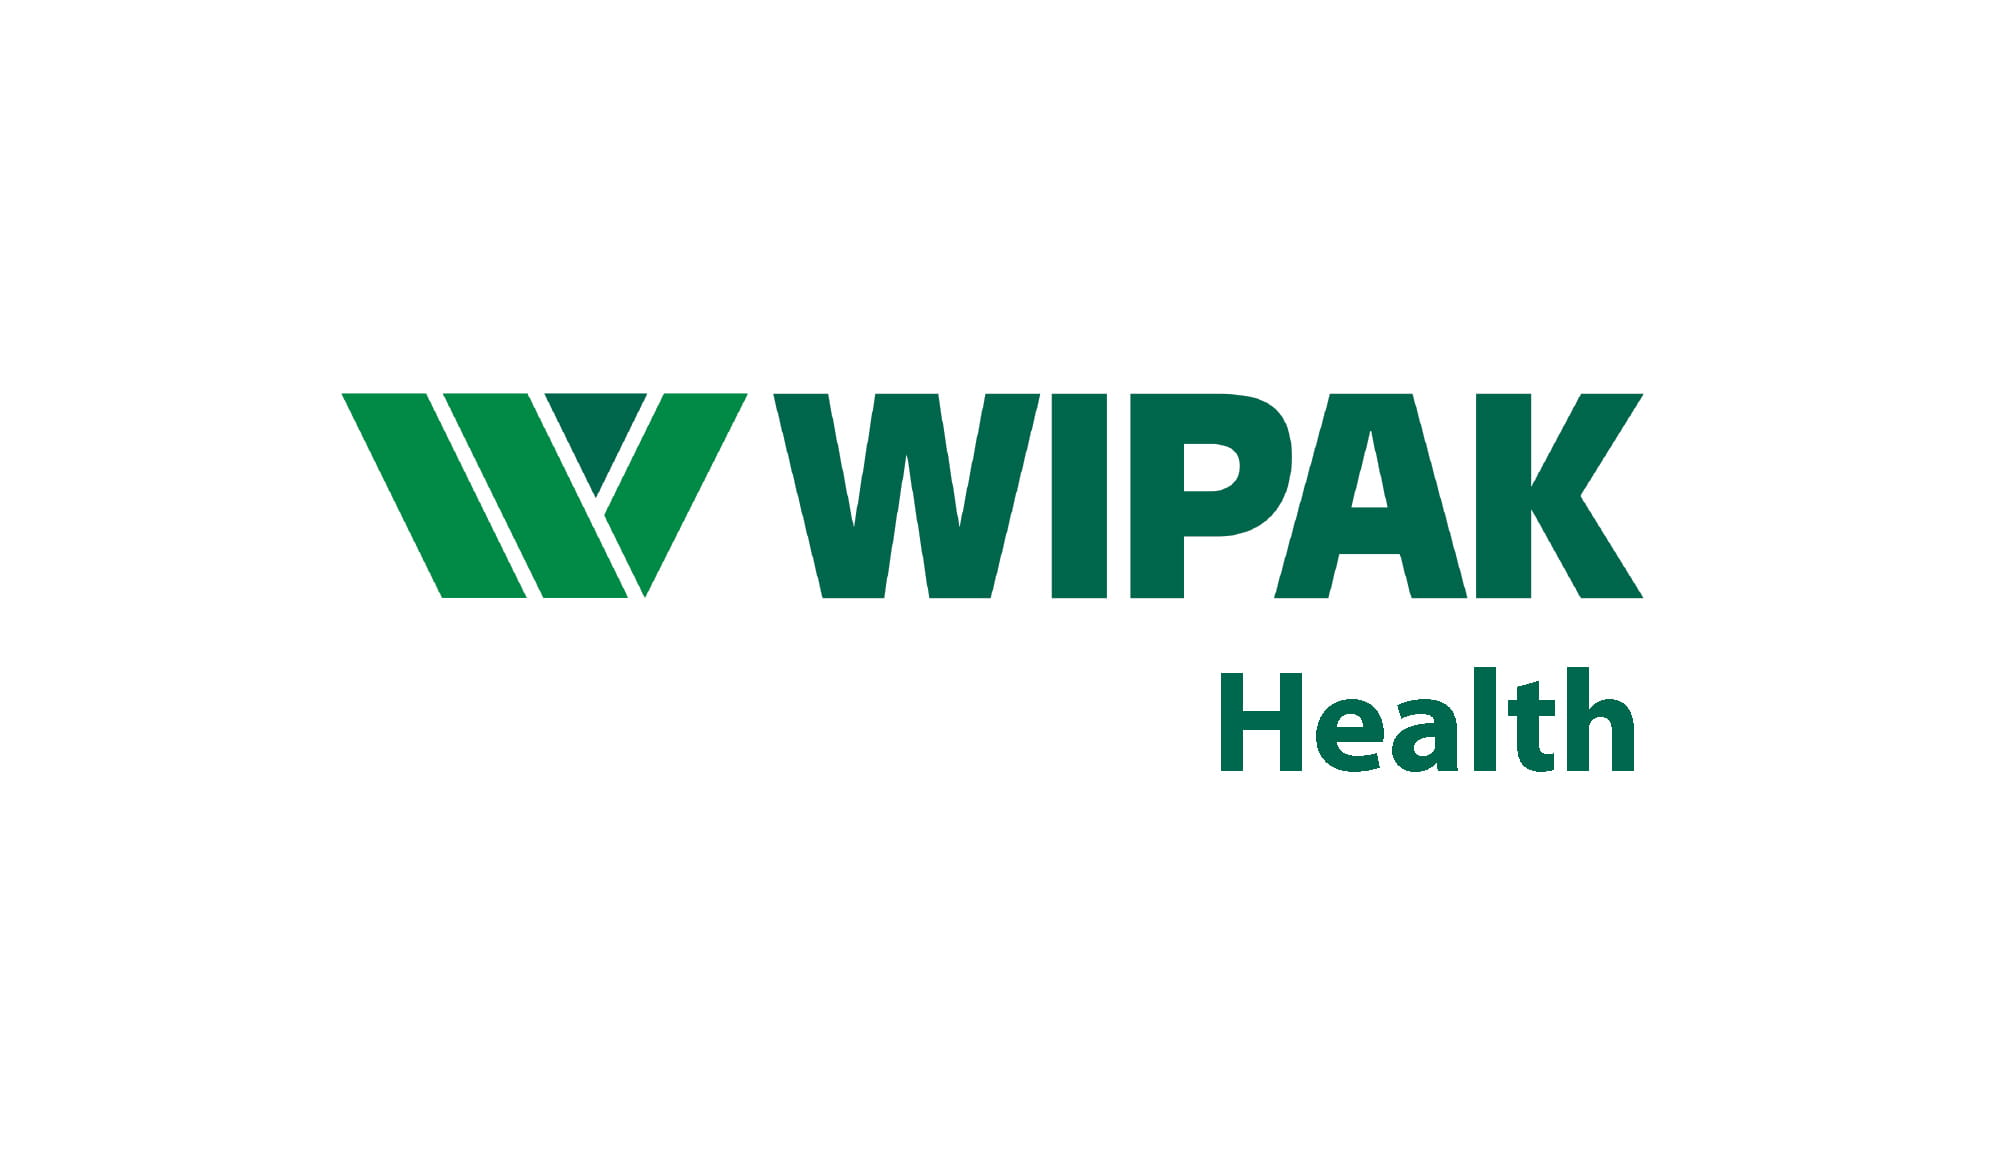 Wipak Walsrode GmbH & Co. KG